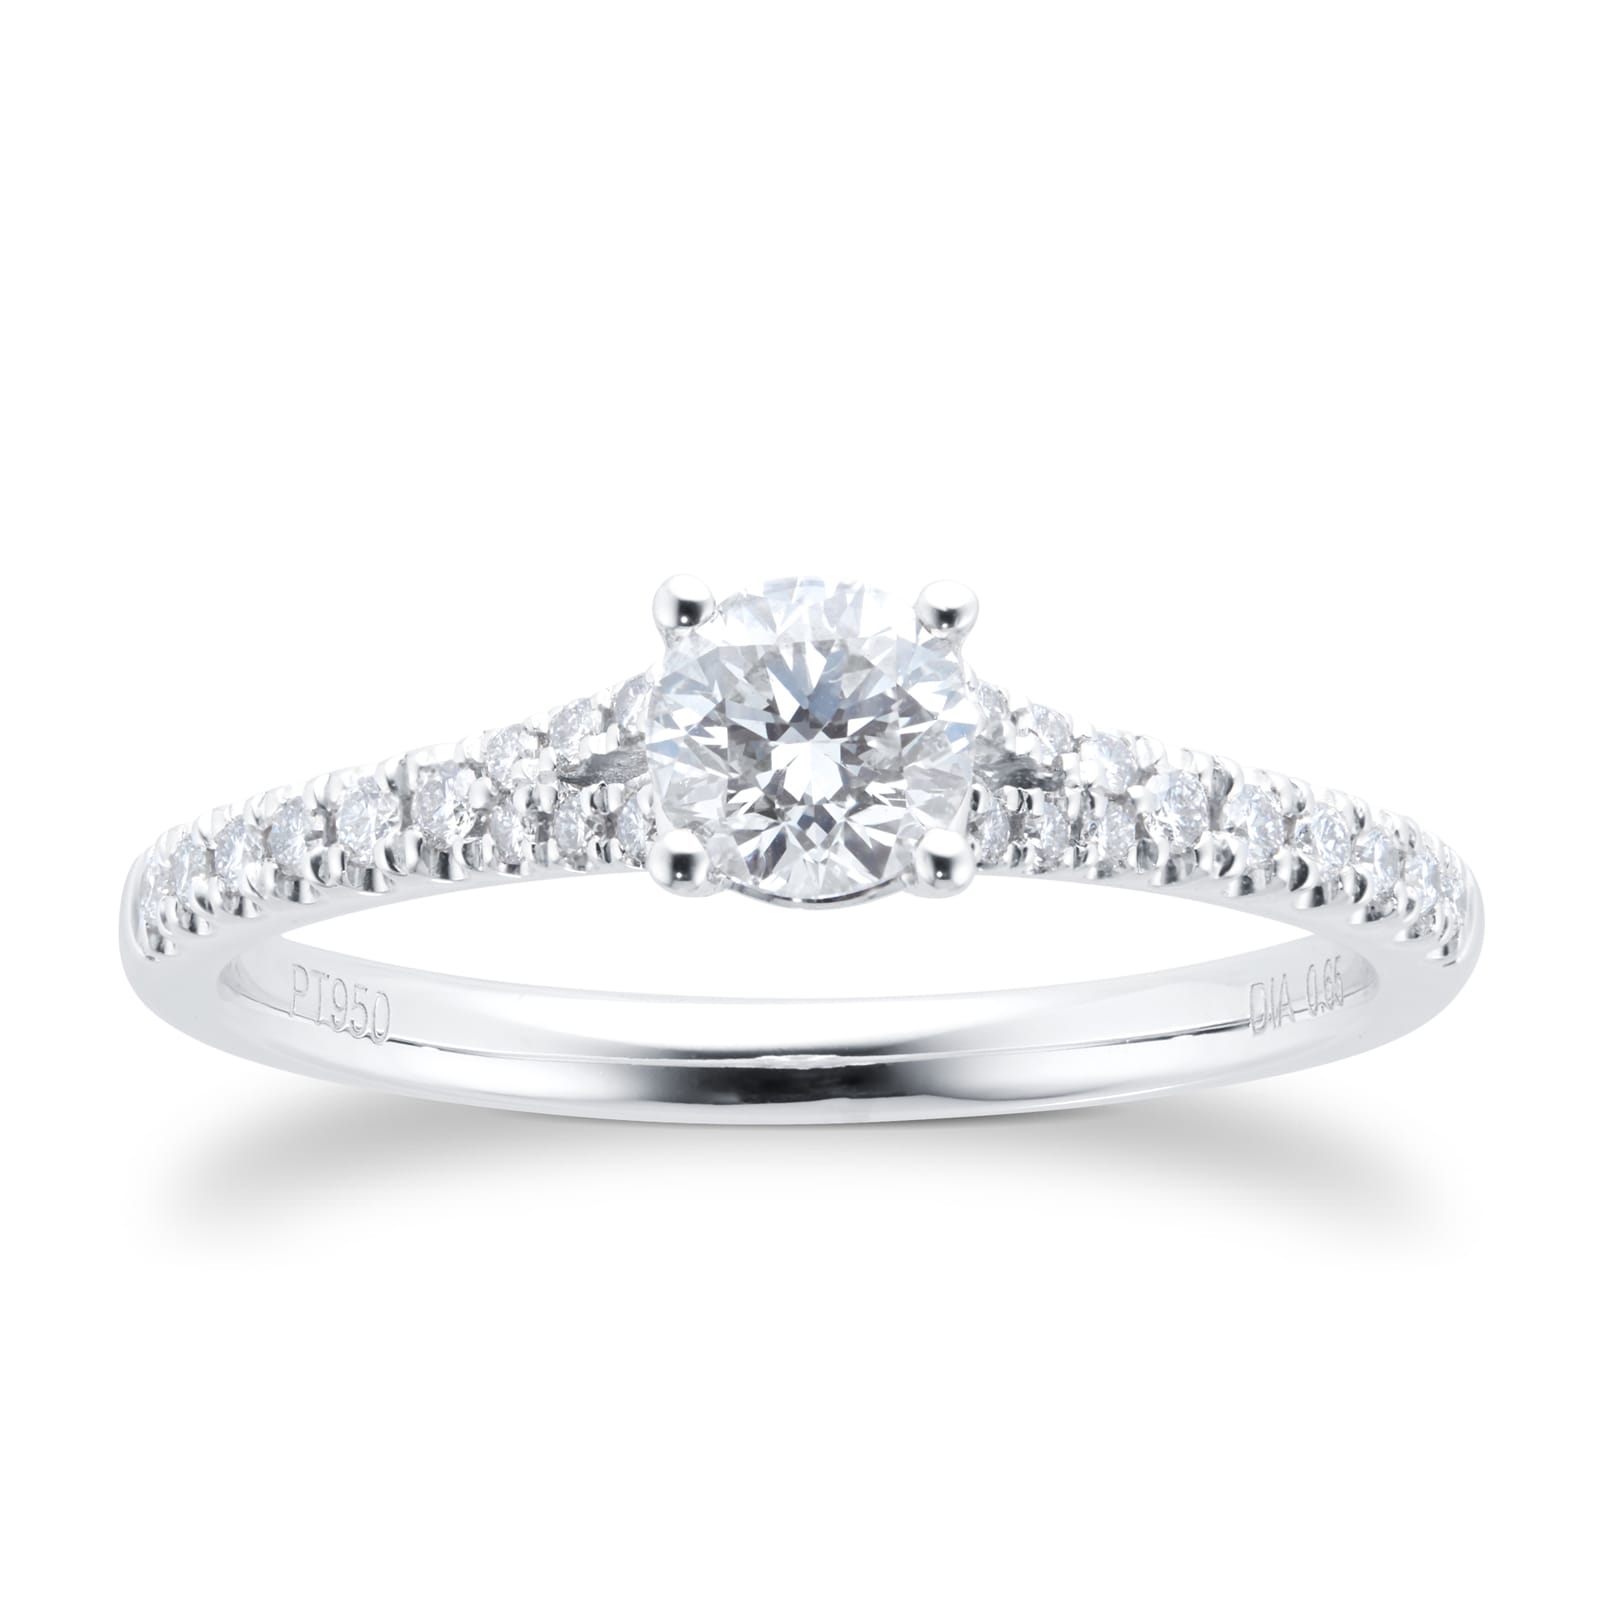 Platinum 0.65cttw Diamond Round Brilliant Cut Engagement Ring - Ring Size P